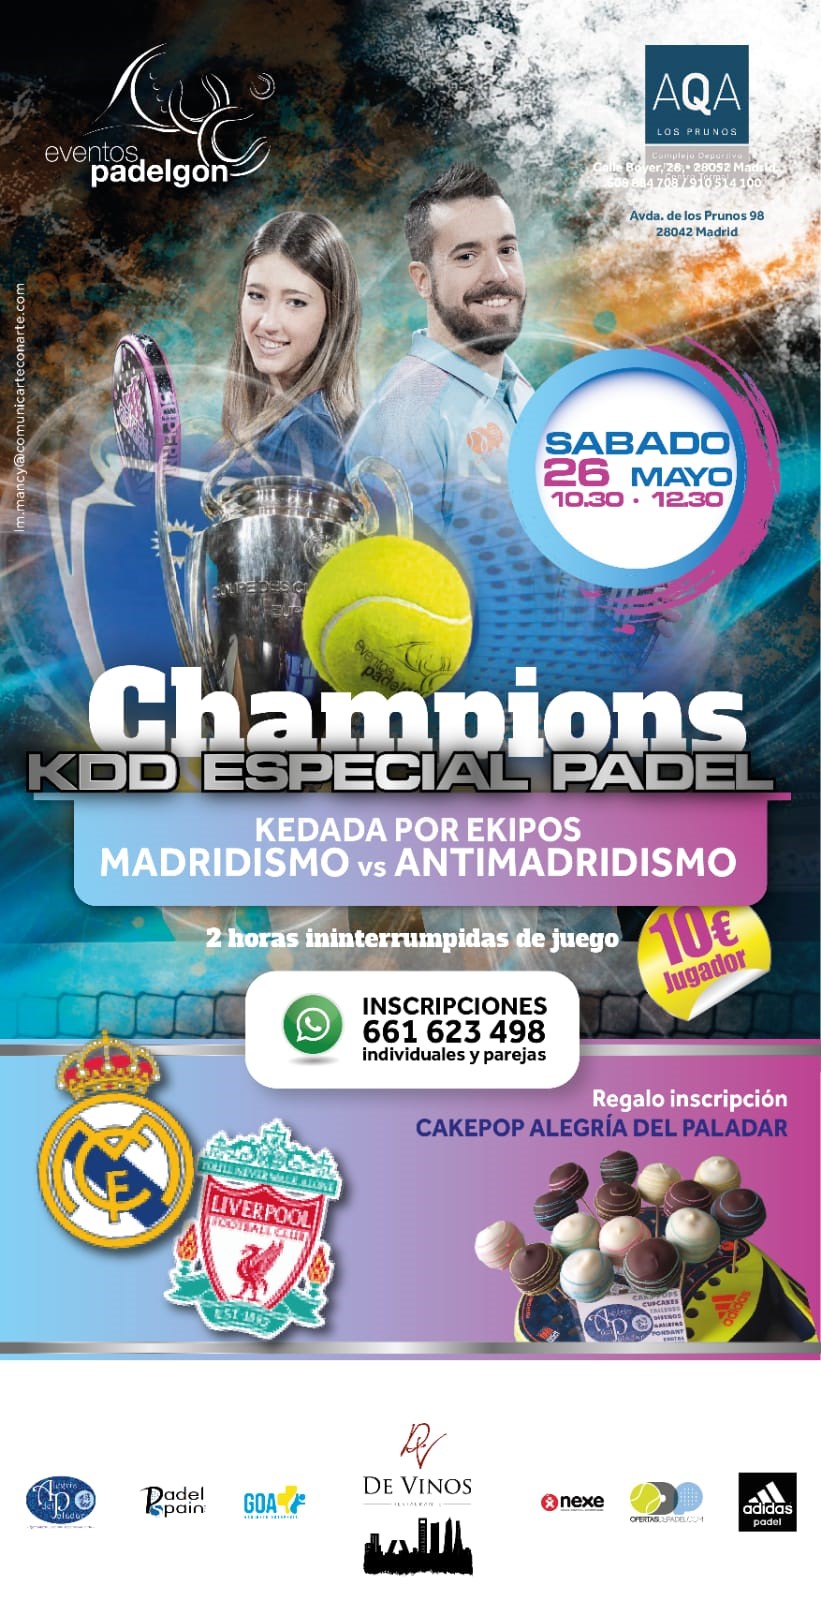 Kedada AQA Los Prunos champions league